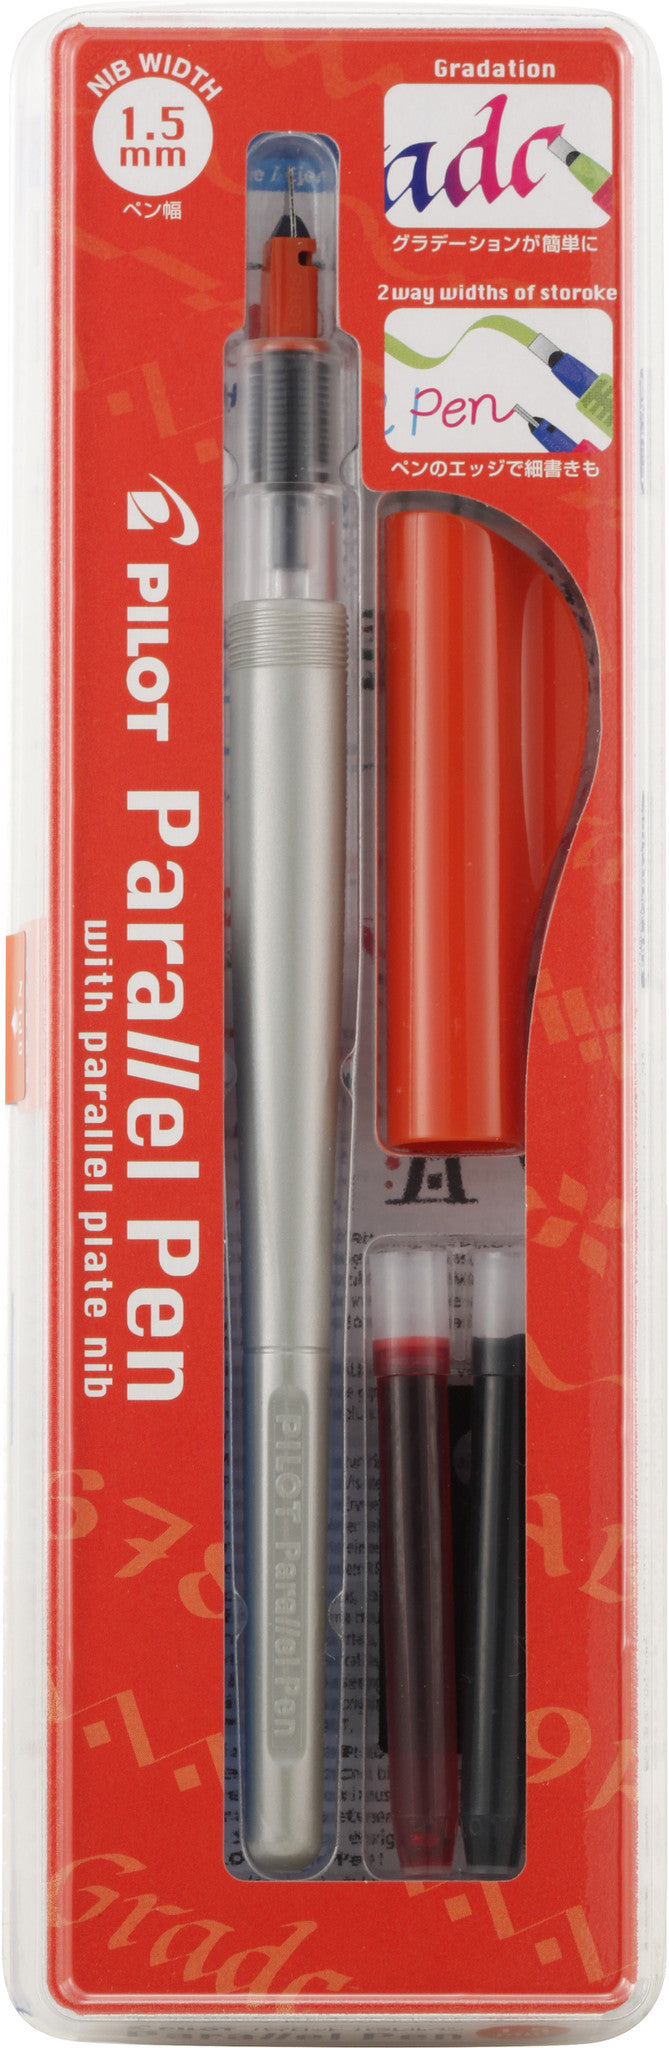 Koh-i-Noor Rapidograph Slim Pack 4-Pen Set #3165SP4 (DISC)